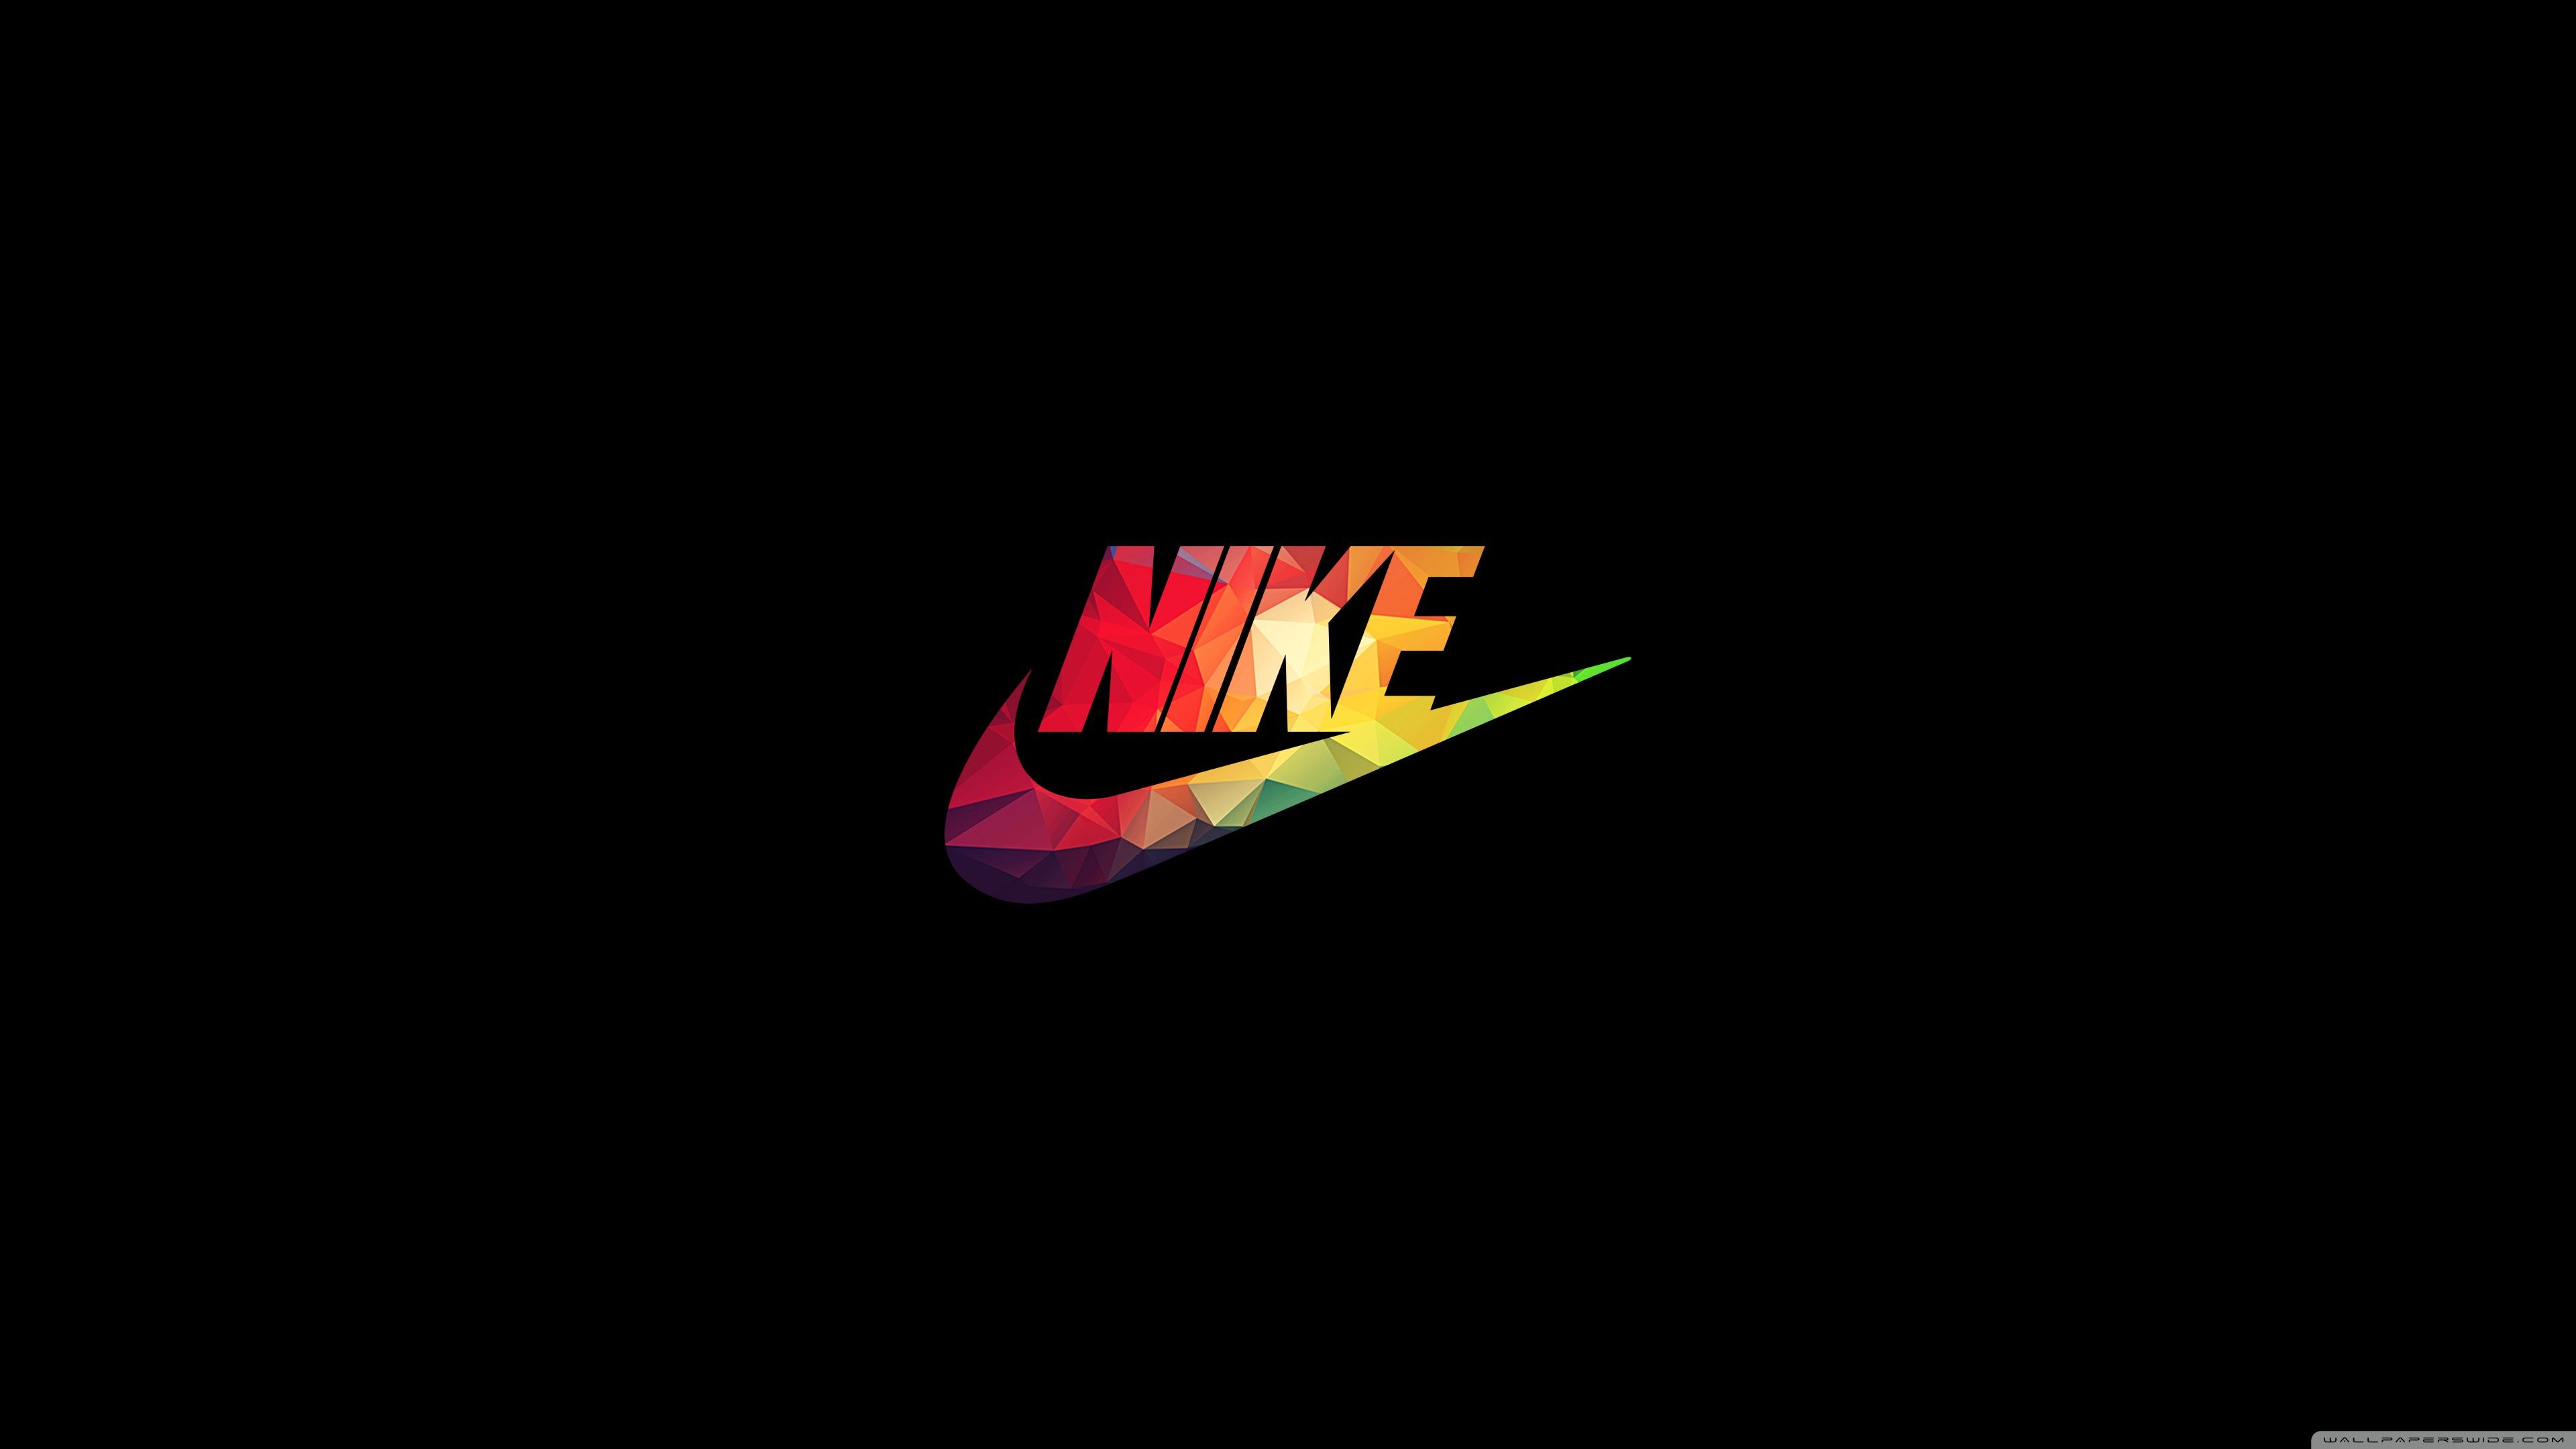 33+] Nike 4k Wallpapers - WallpaperSafari